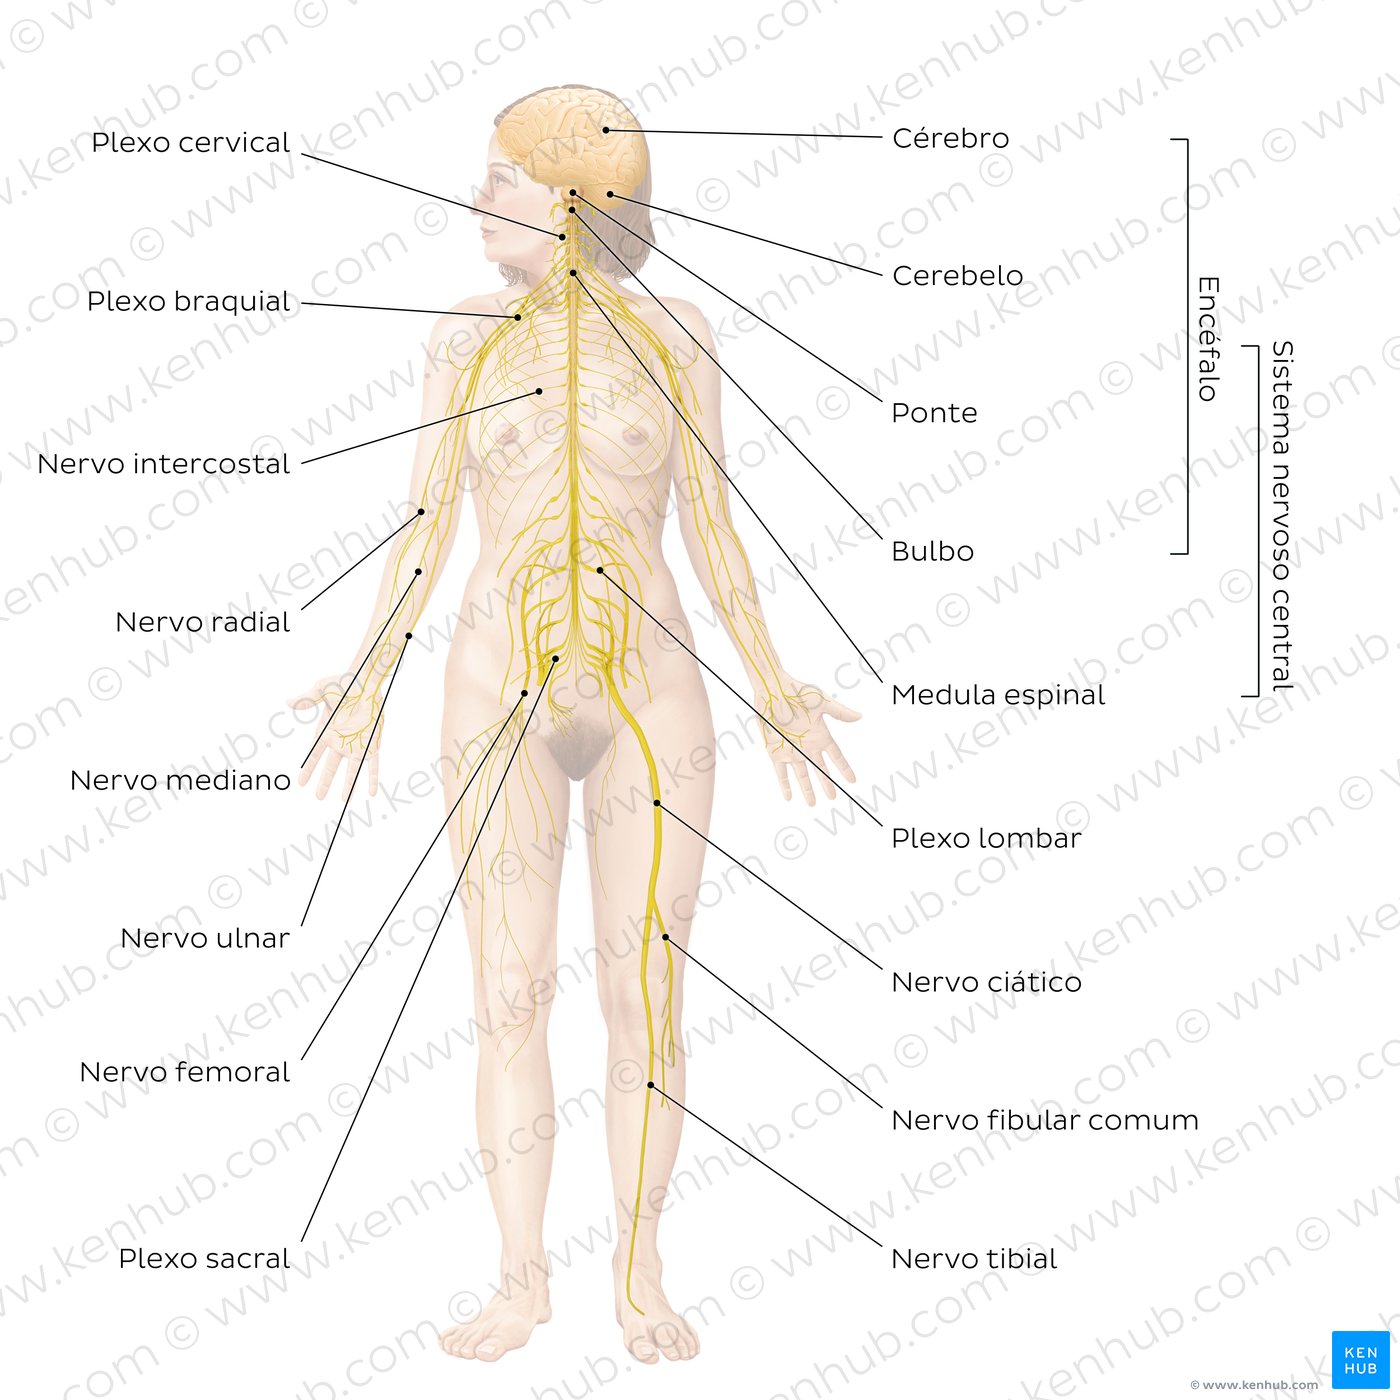 Principais nervos do corpo humano - diagrama